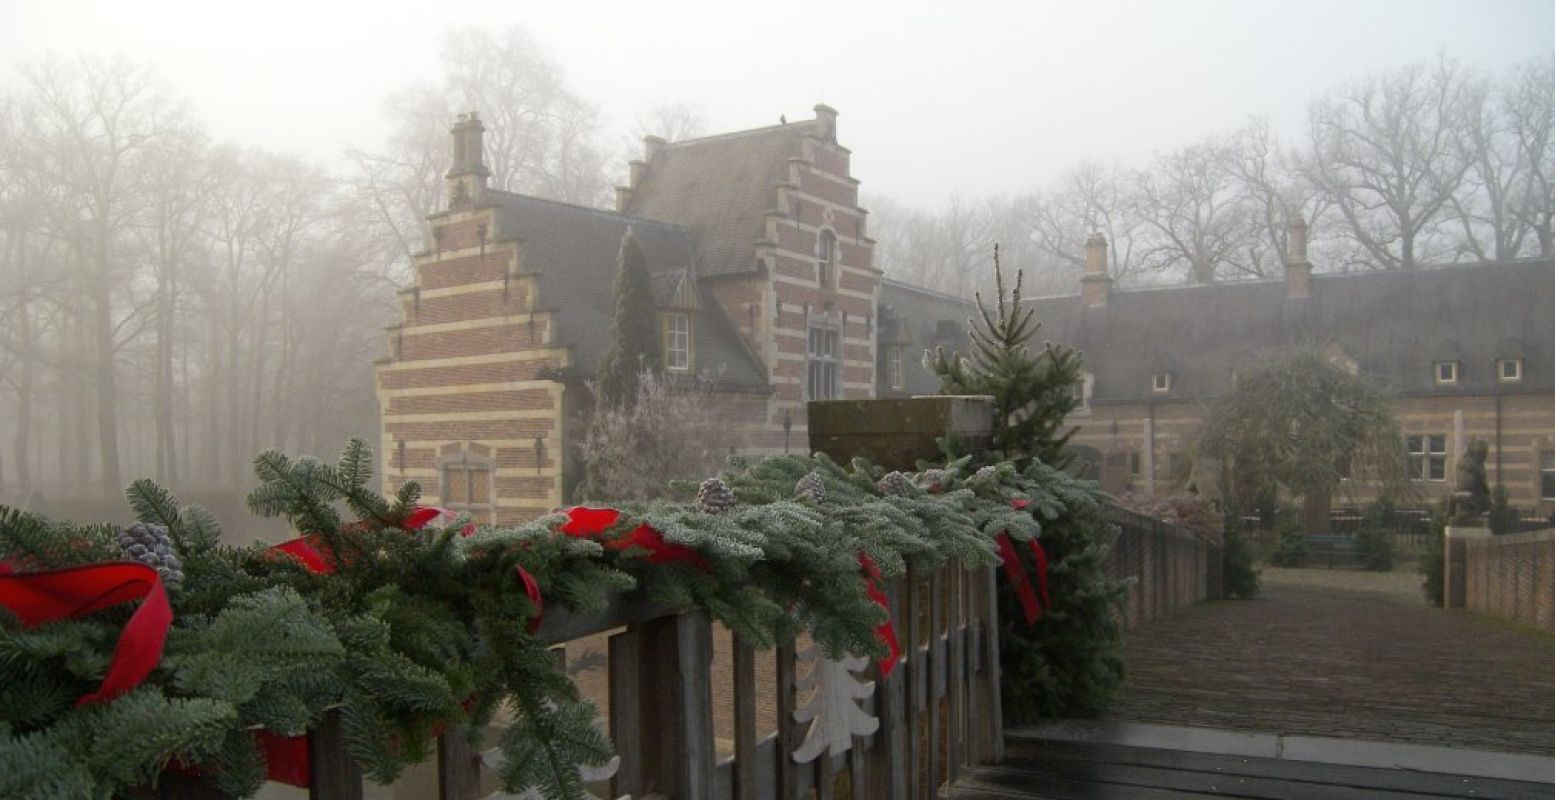 Romantische kerstdecoratie bij Kasteel Heeswijk. Foto: Kasteel Heeswijk